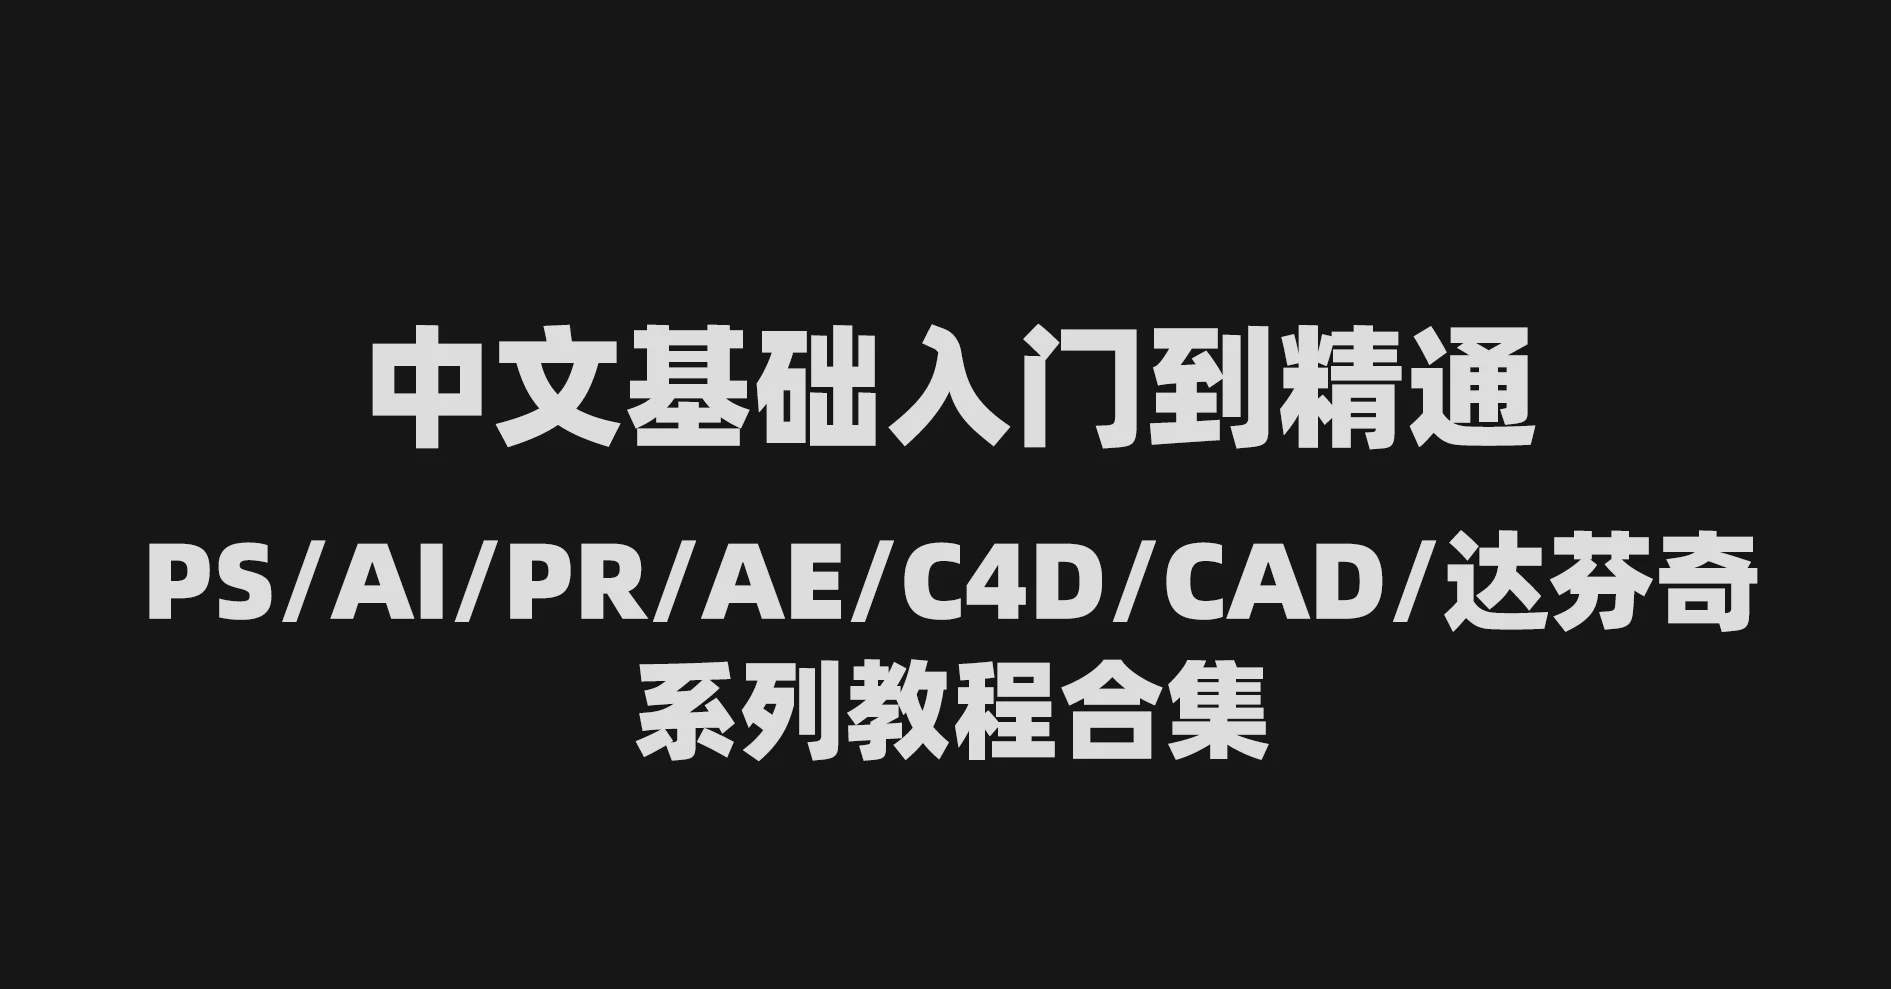 中文基础入门到精通PS/AI/PR/AE/C4D/CAD/达芬奇系列教程合集